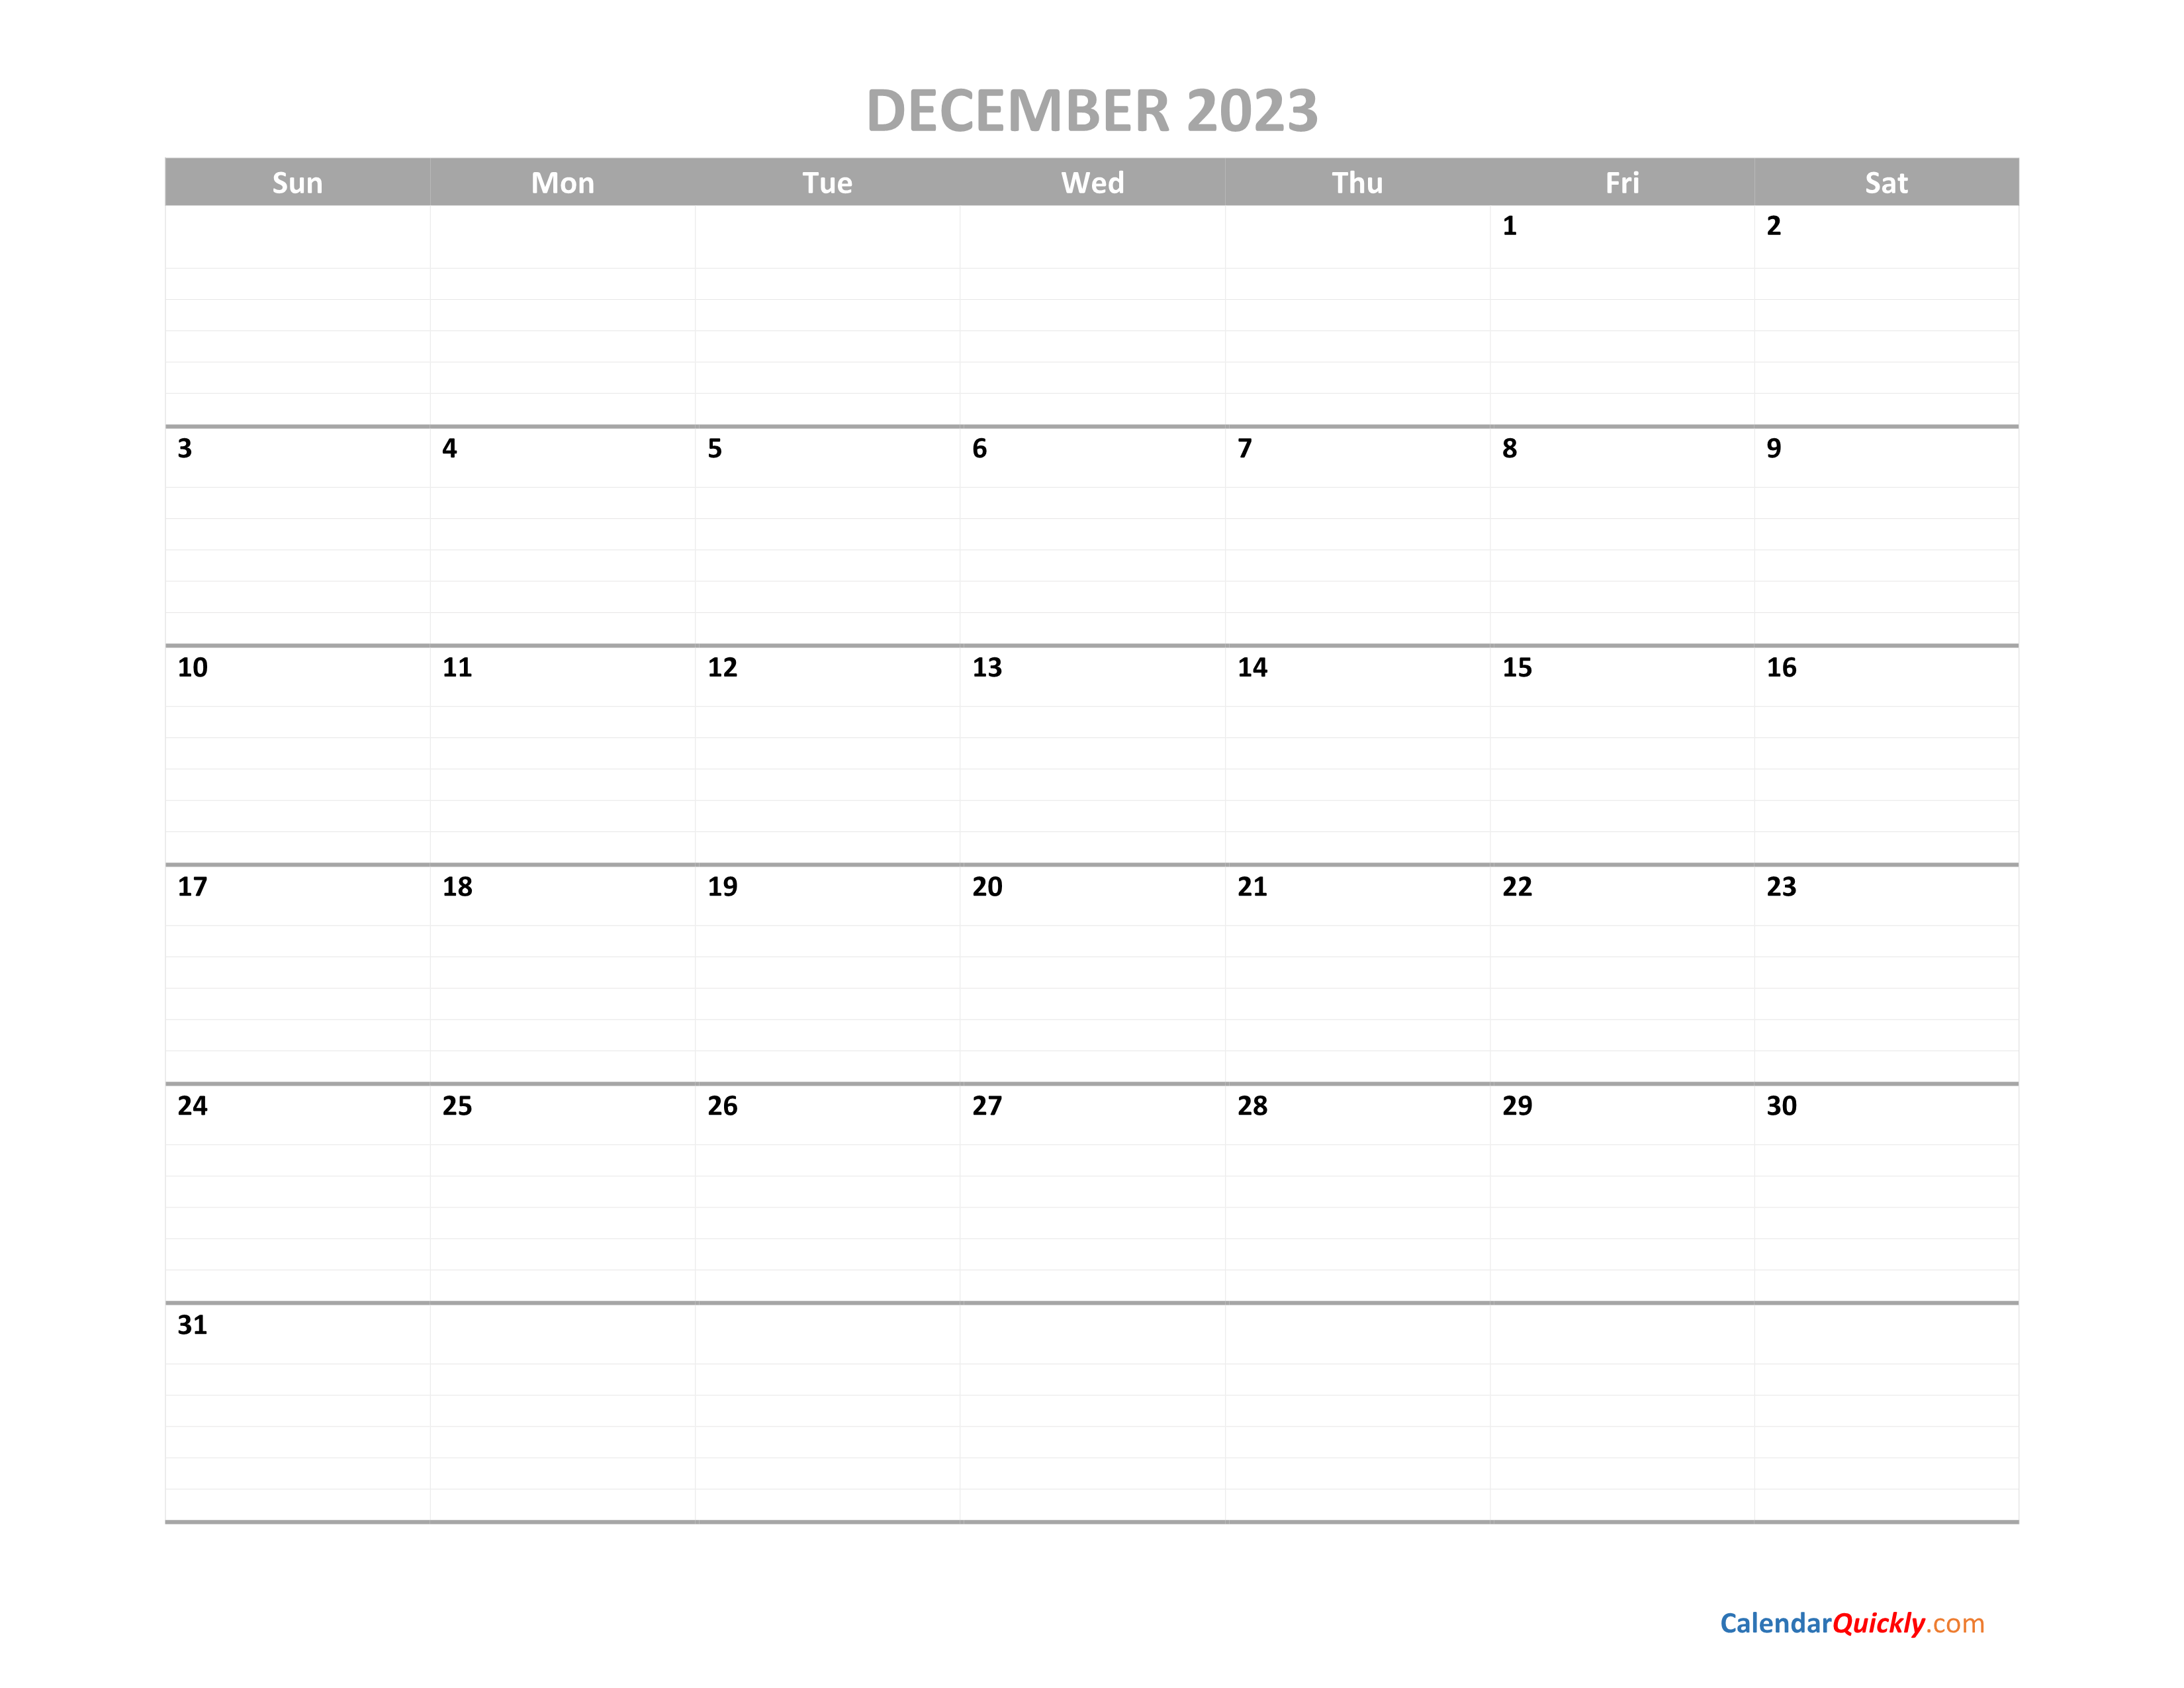 december-calendar-2023-printable-calendar-quickly